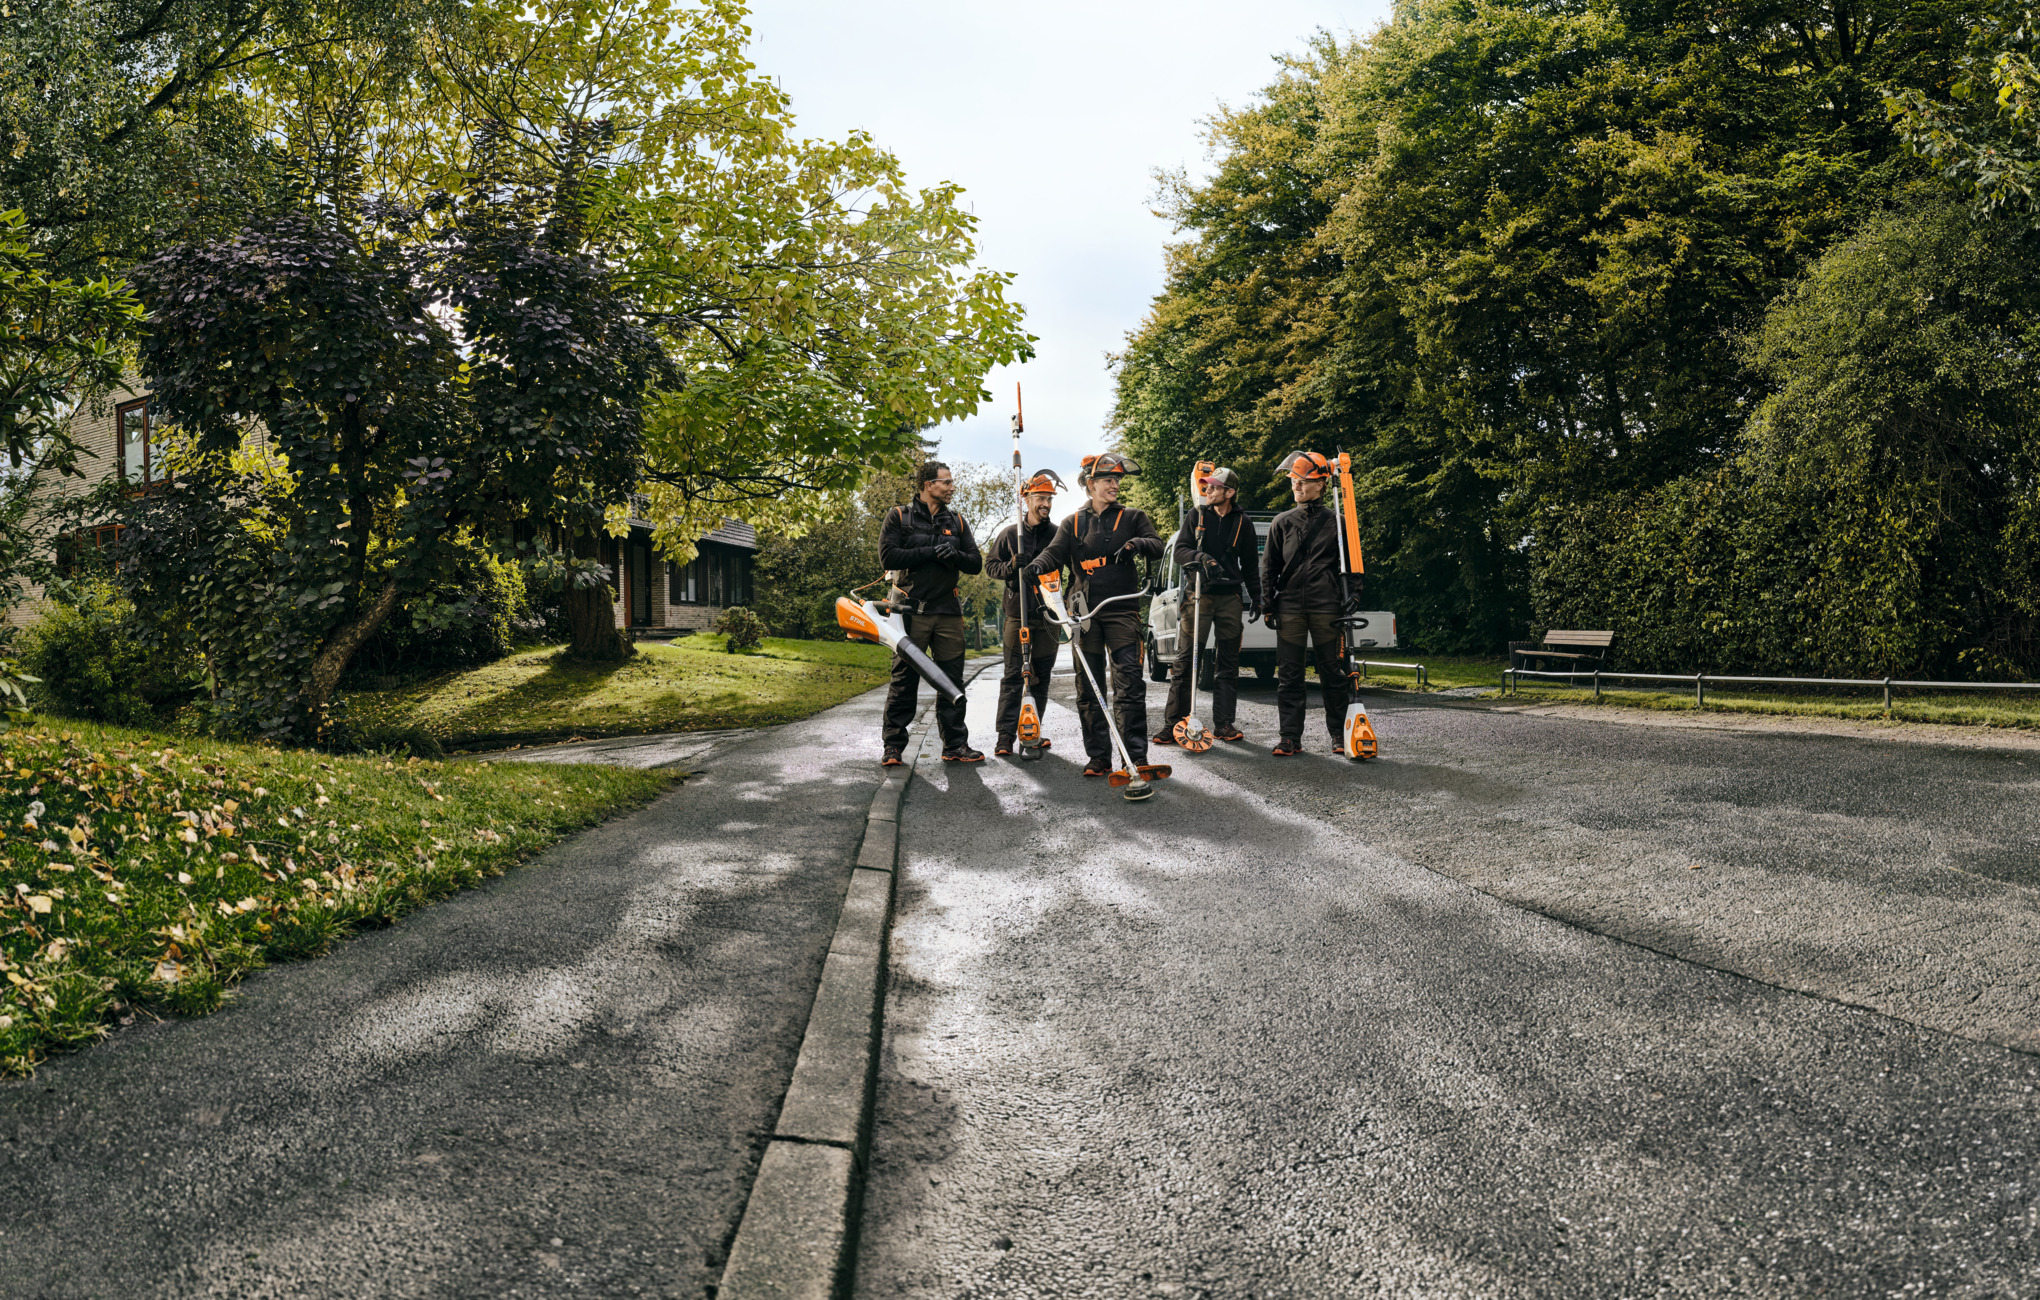 Fünf STIHL Profis laufen mit Akku-Geräten eine Straße entlang